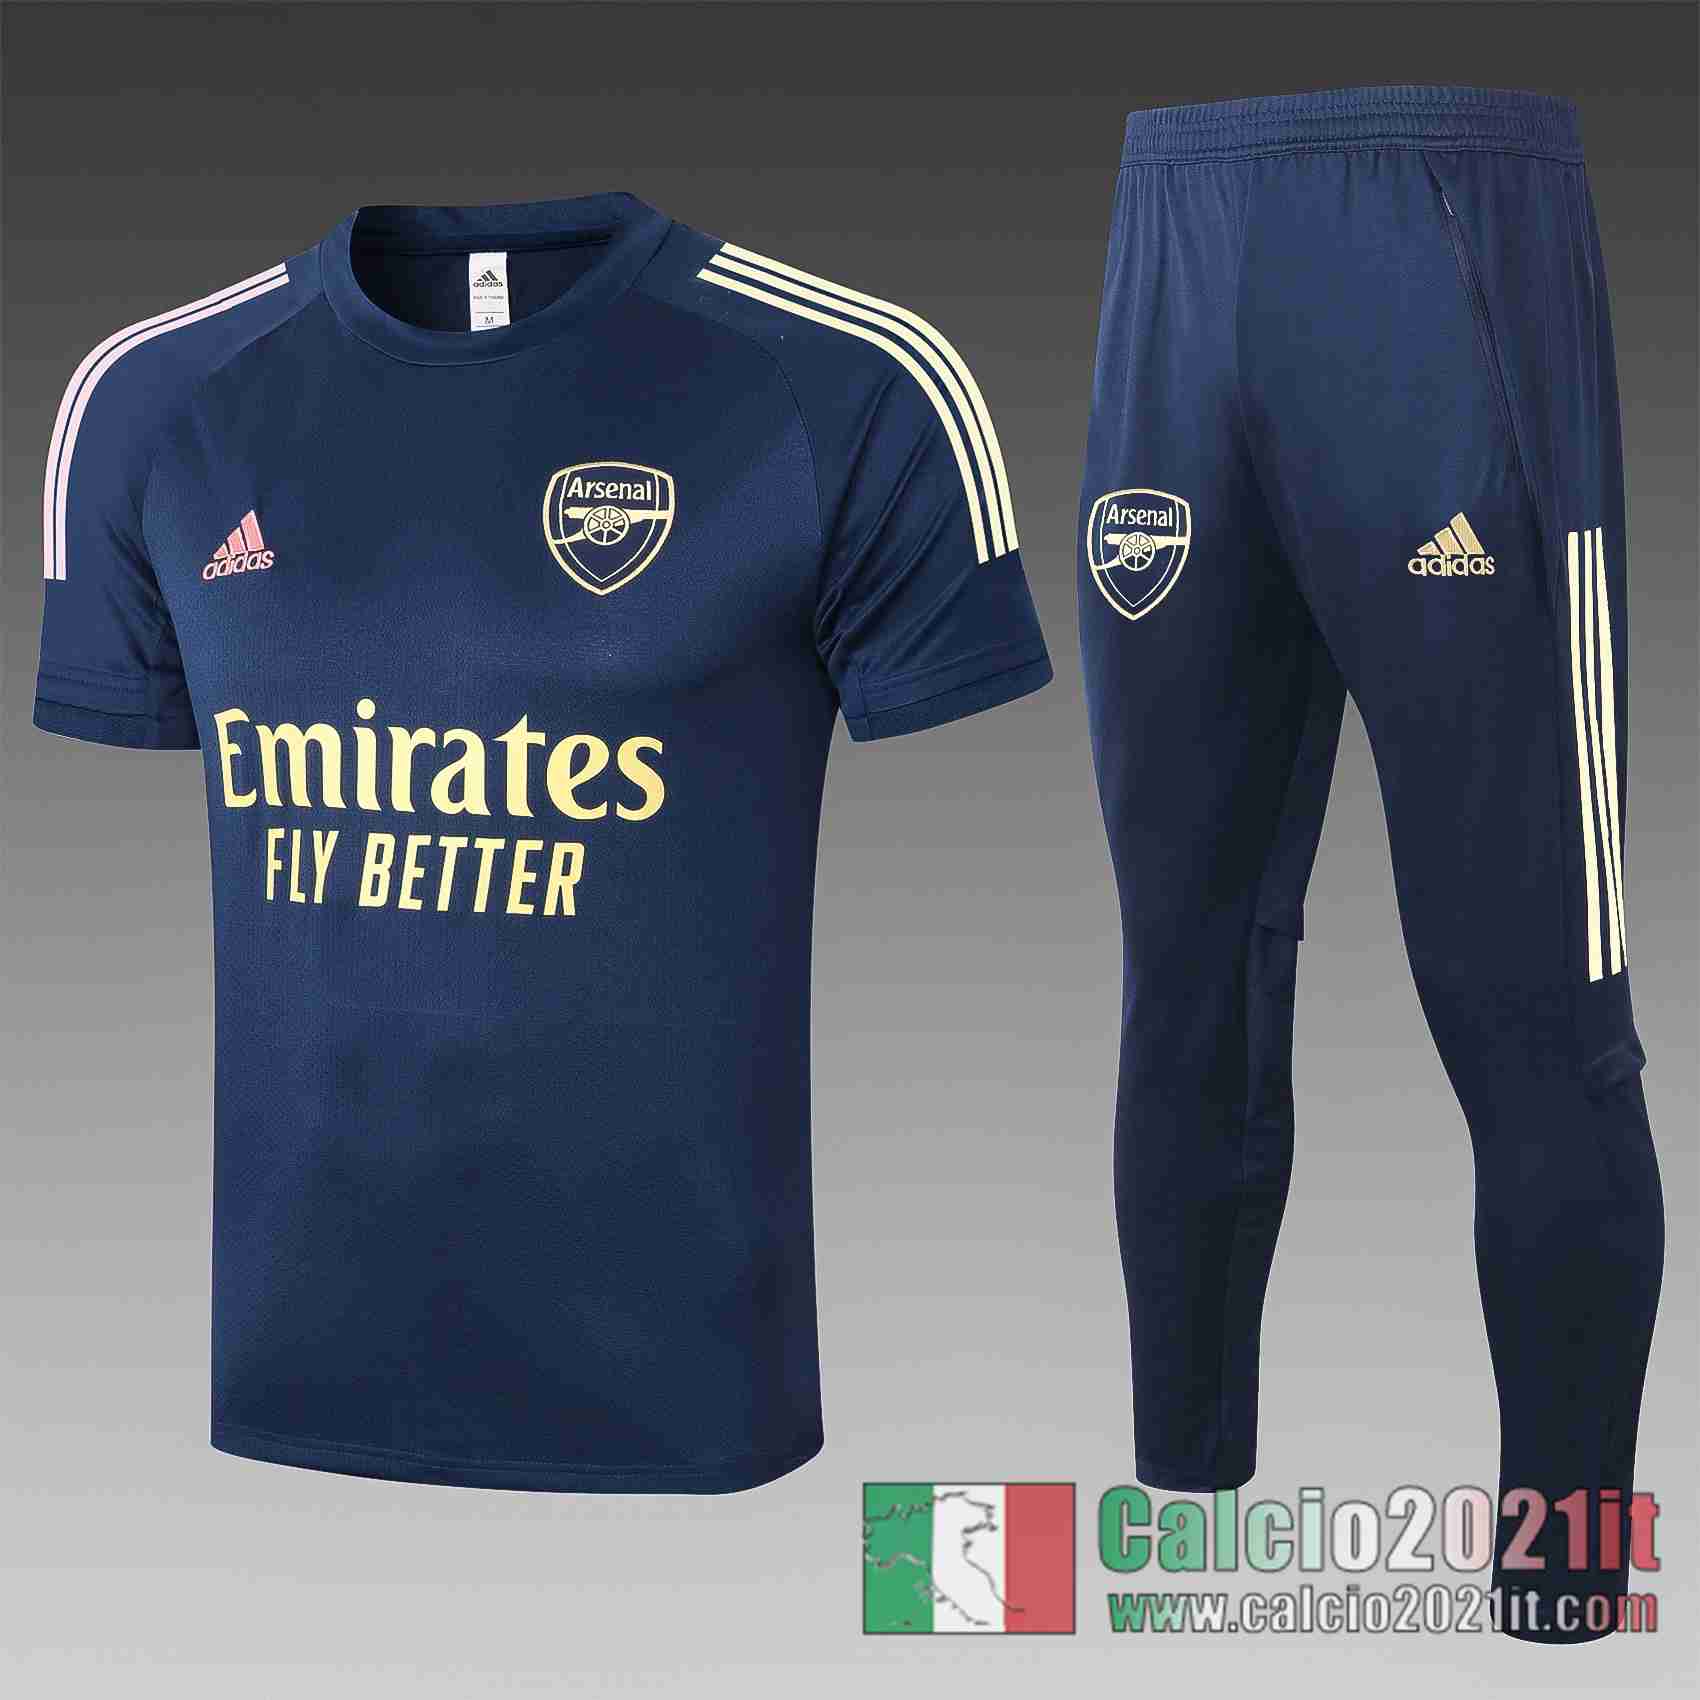 Arsenal Magliette Tuta Calcio Blu scuro 2020 2021 T64